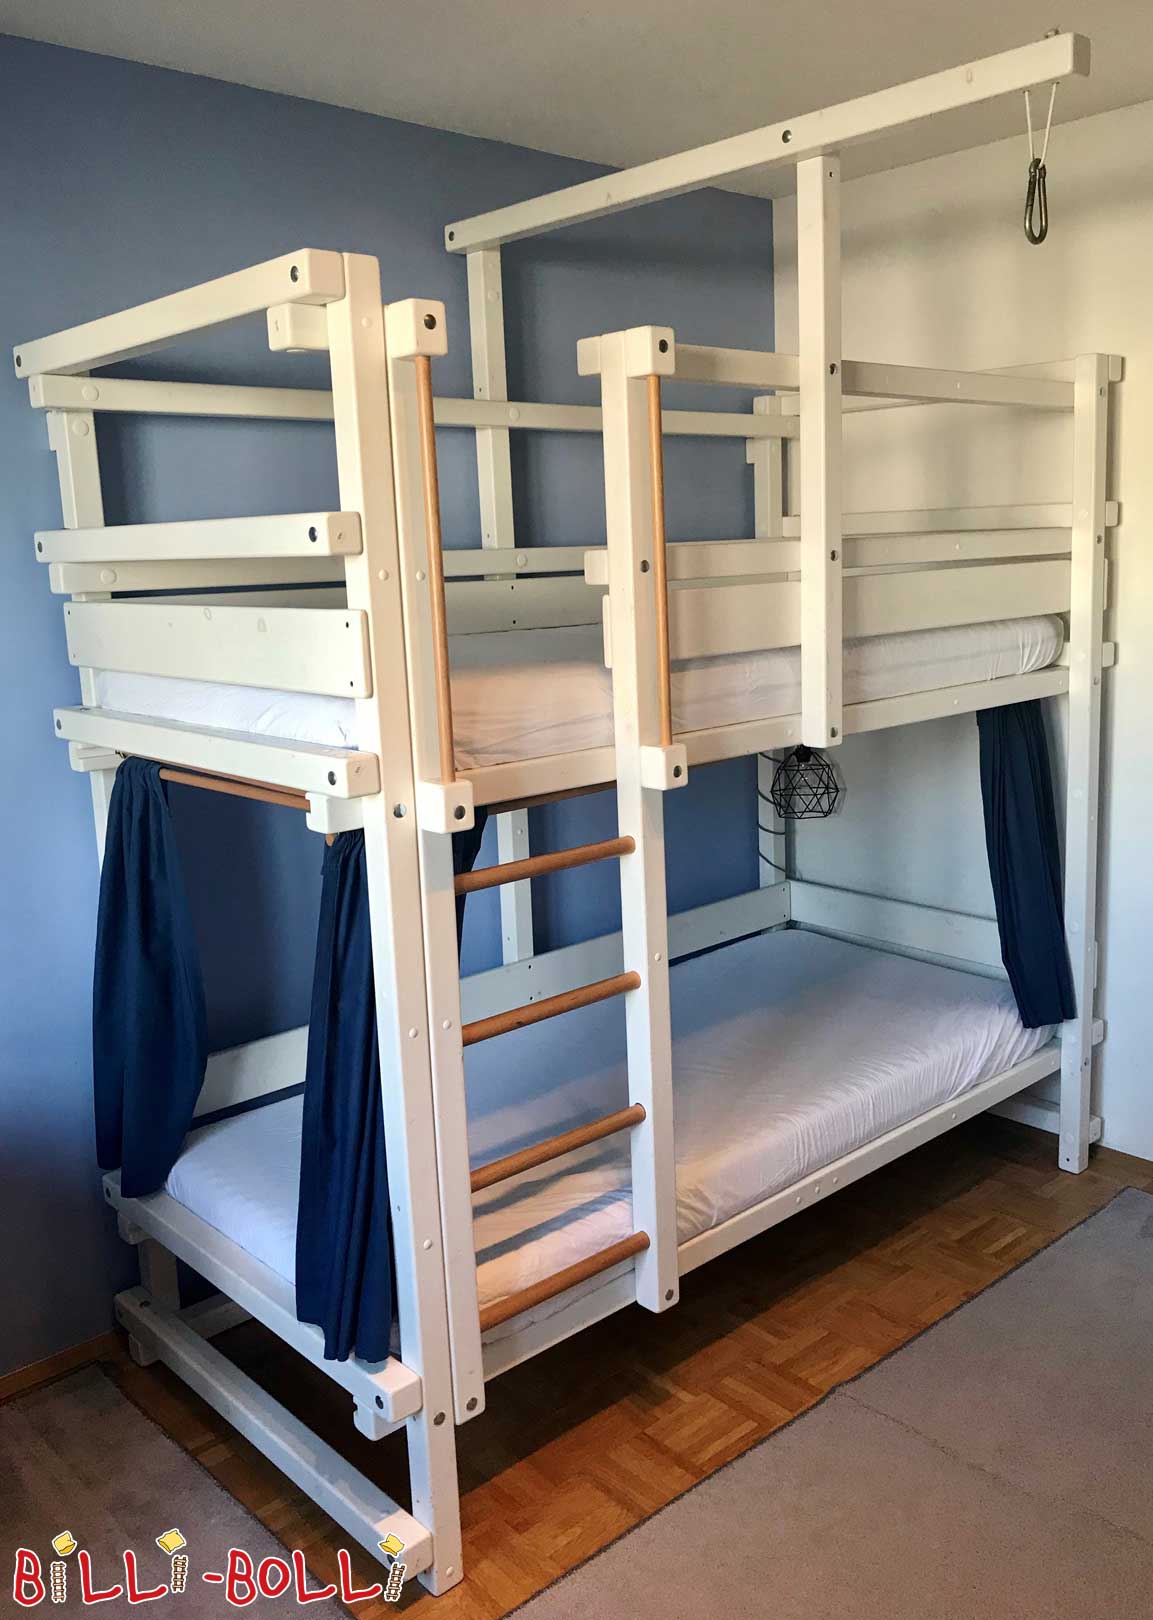 Billi-Bolli divstāvu gulta priedes balta lakota - Minhenē (Kategorija: Izmantota divstāvu gulta)